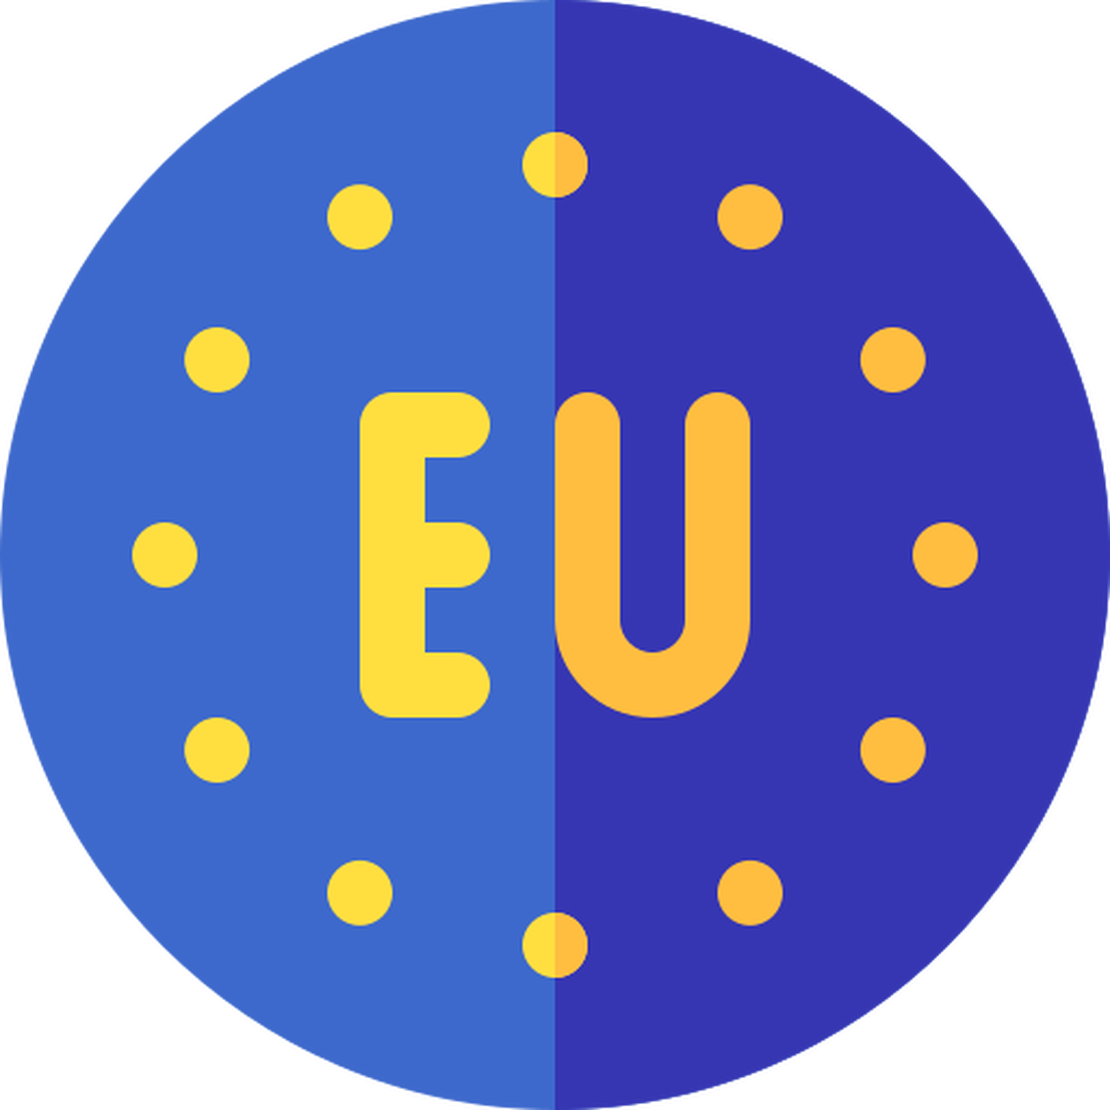 Comment fonctionne l'Union européenne?